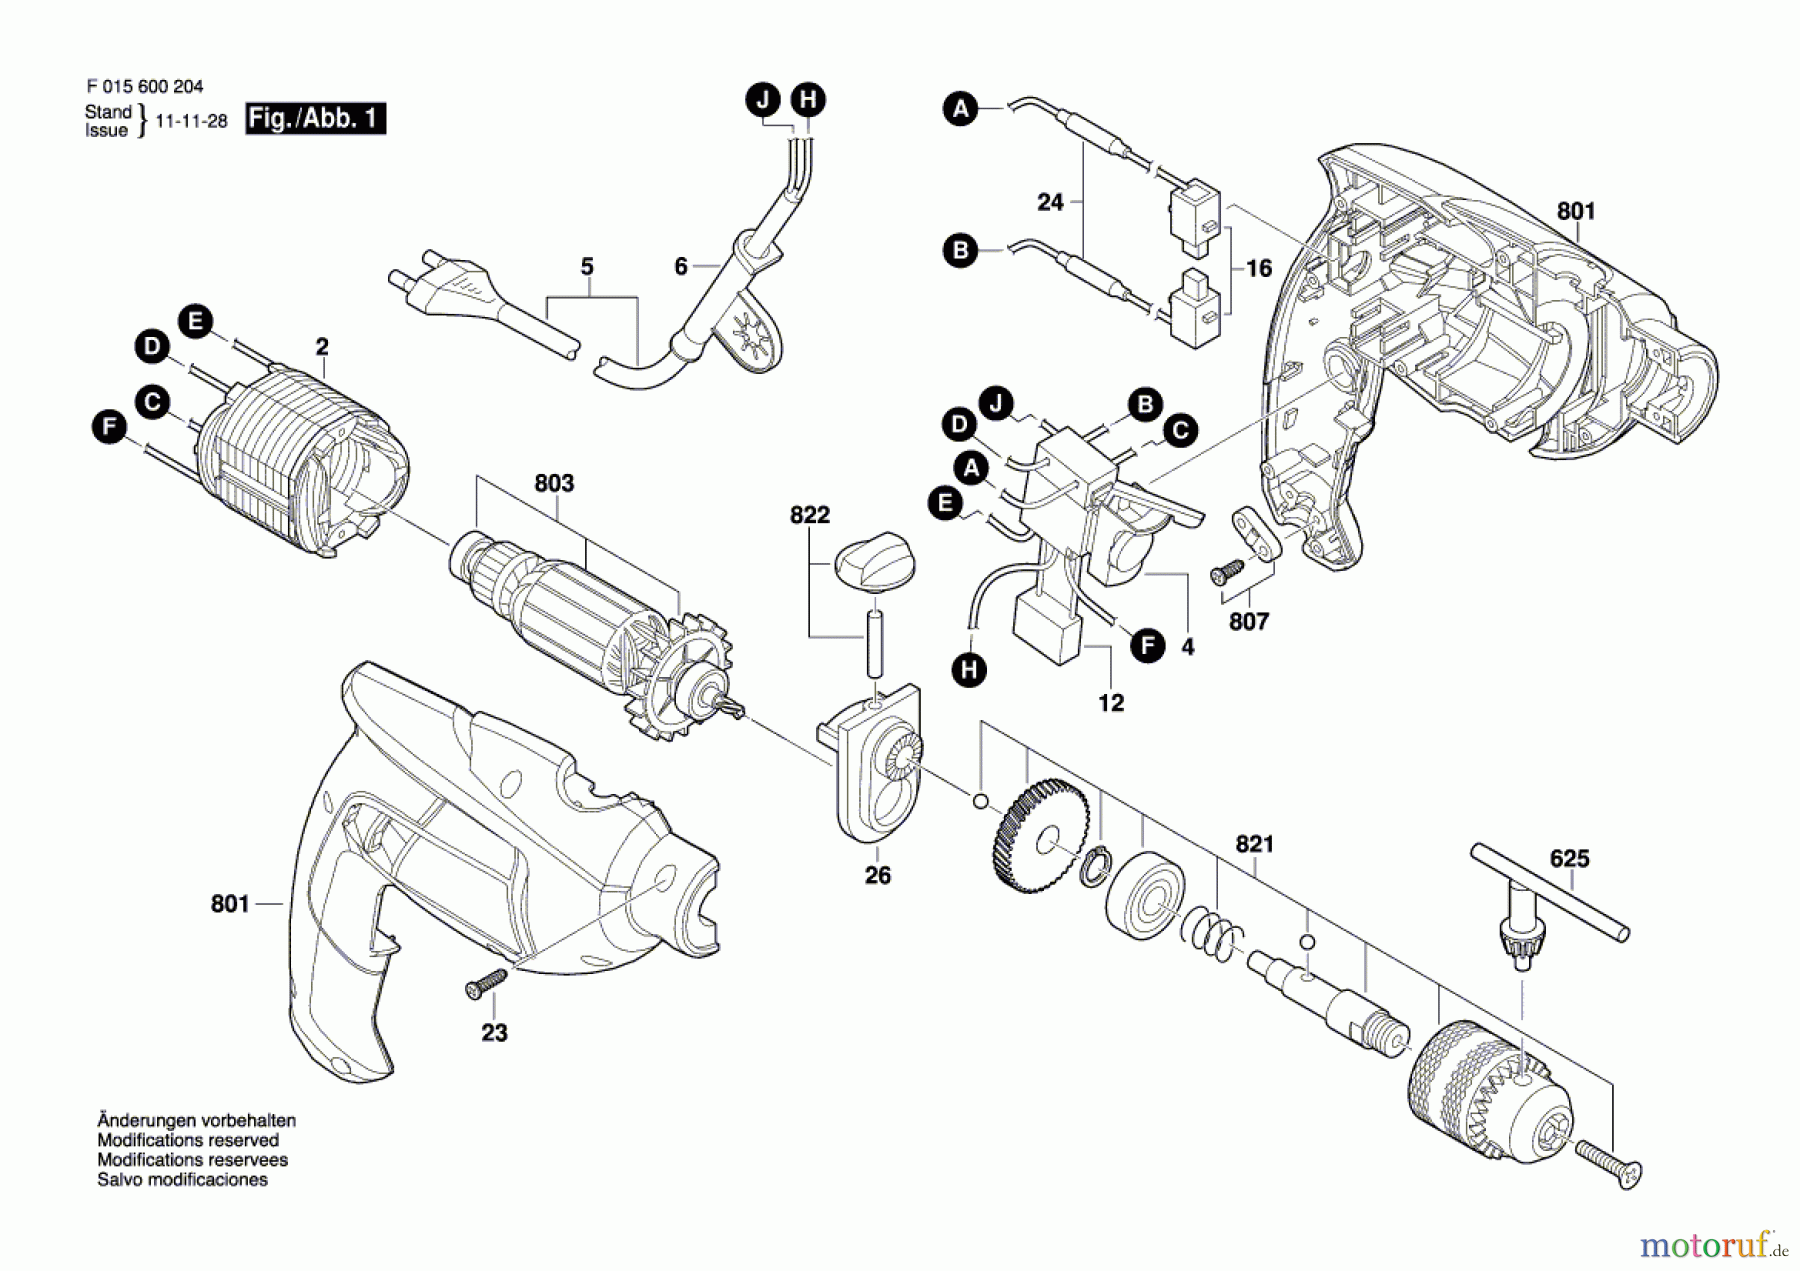  Bosch Werkzeug Hf-Schlagbohrmaschine 6002 Seite 1